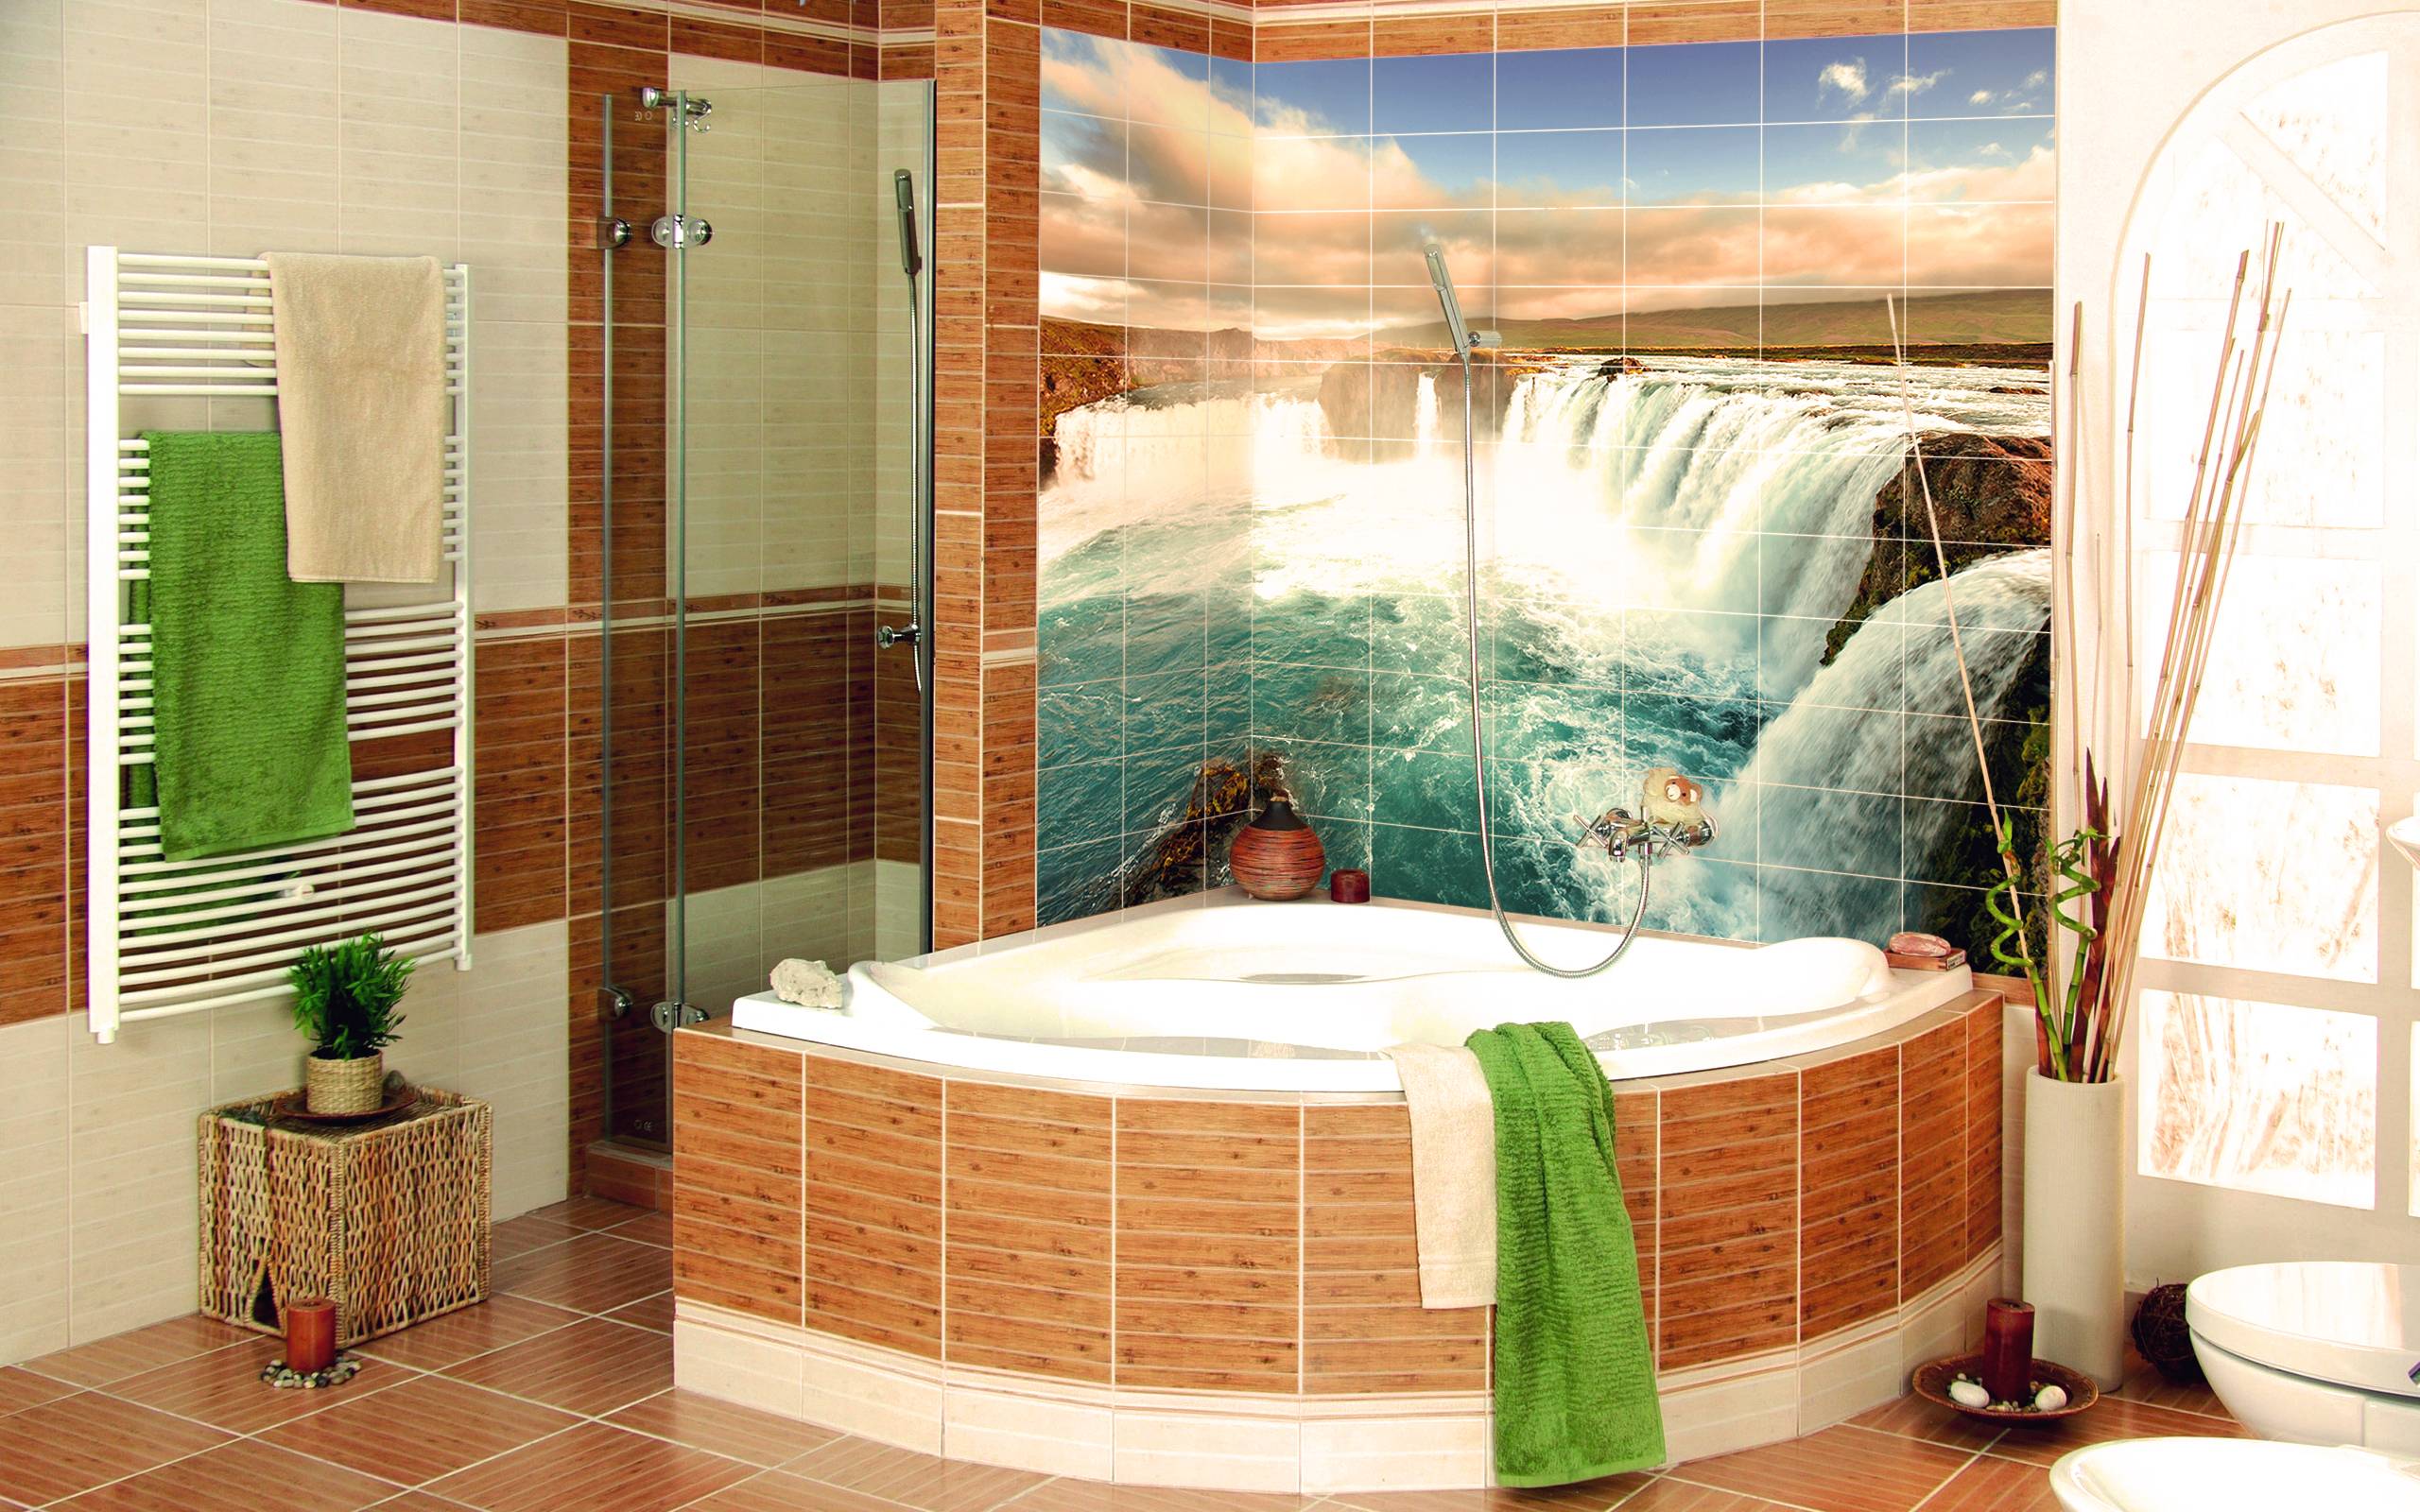 Фотоплитка для ванной комнаты: особенности отделки / zonavannoi.ru